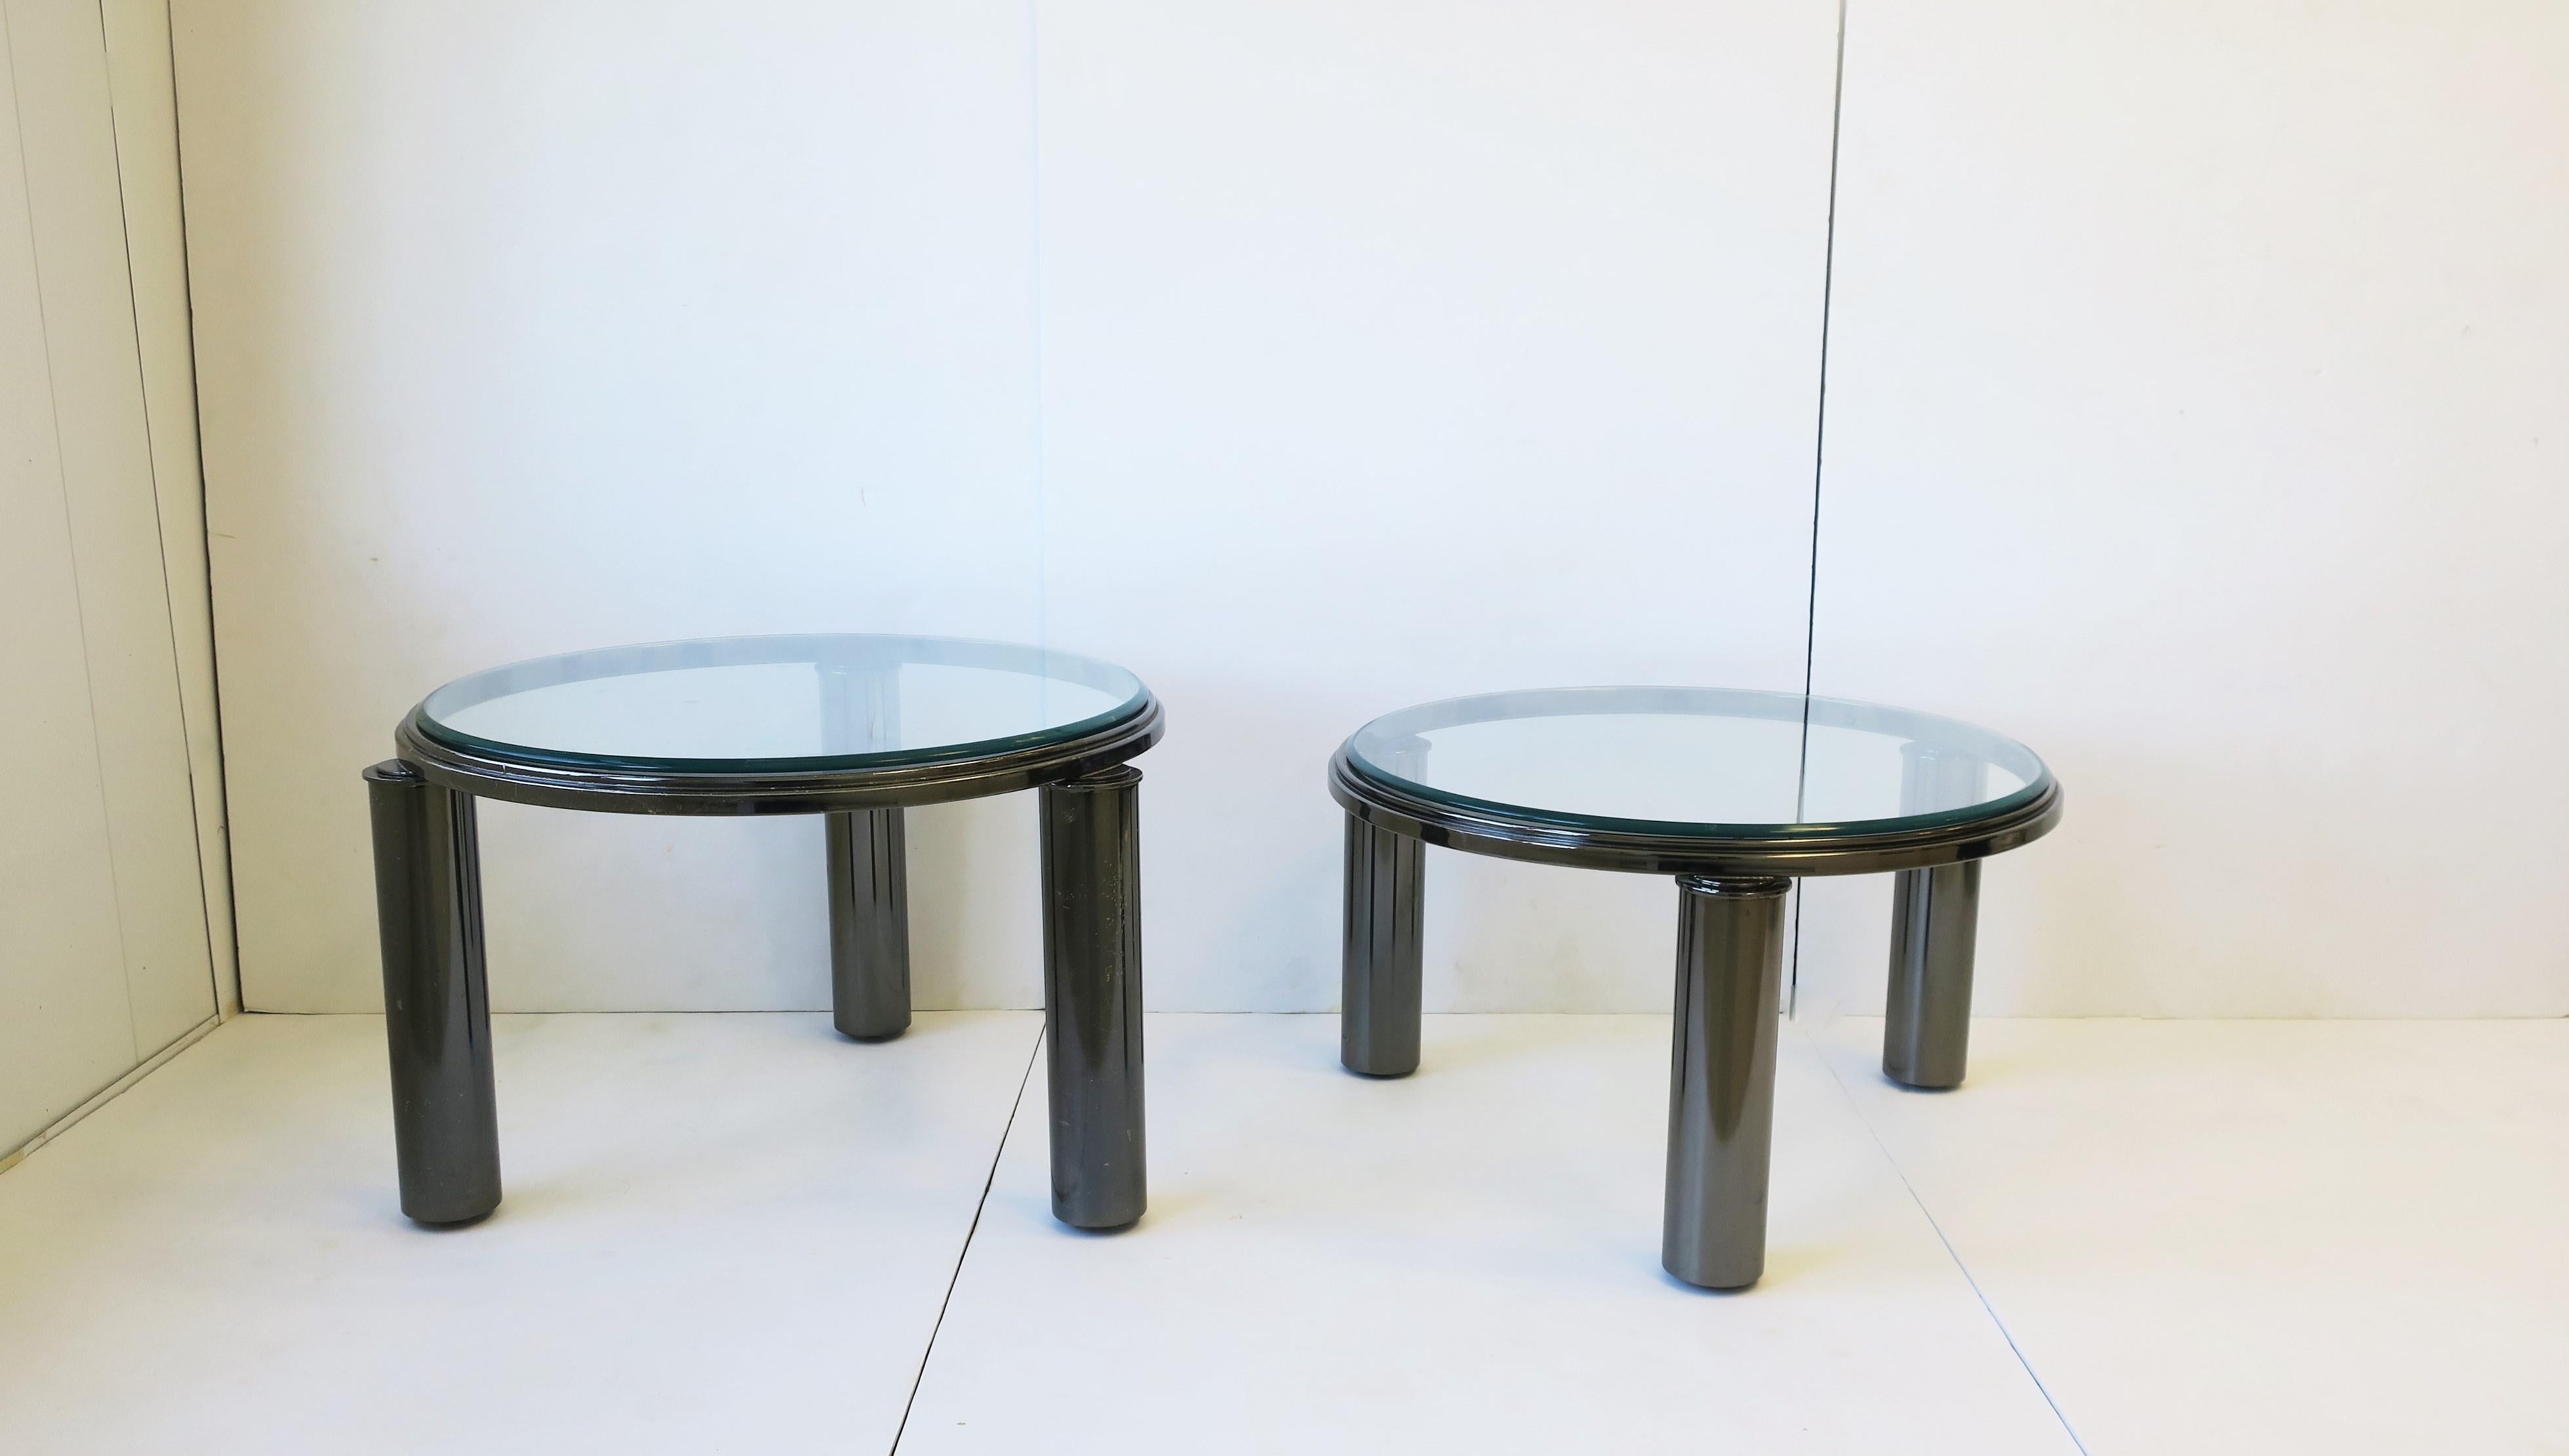 Ensemble de deux (2) tables de cocktail/café rondes à deux niveaux, avec pieds cylindriques et plateaux en verre clair biseauté, design post-moderne des années 1990 